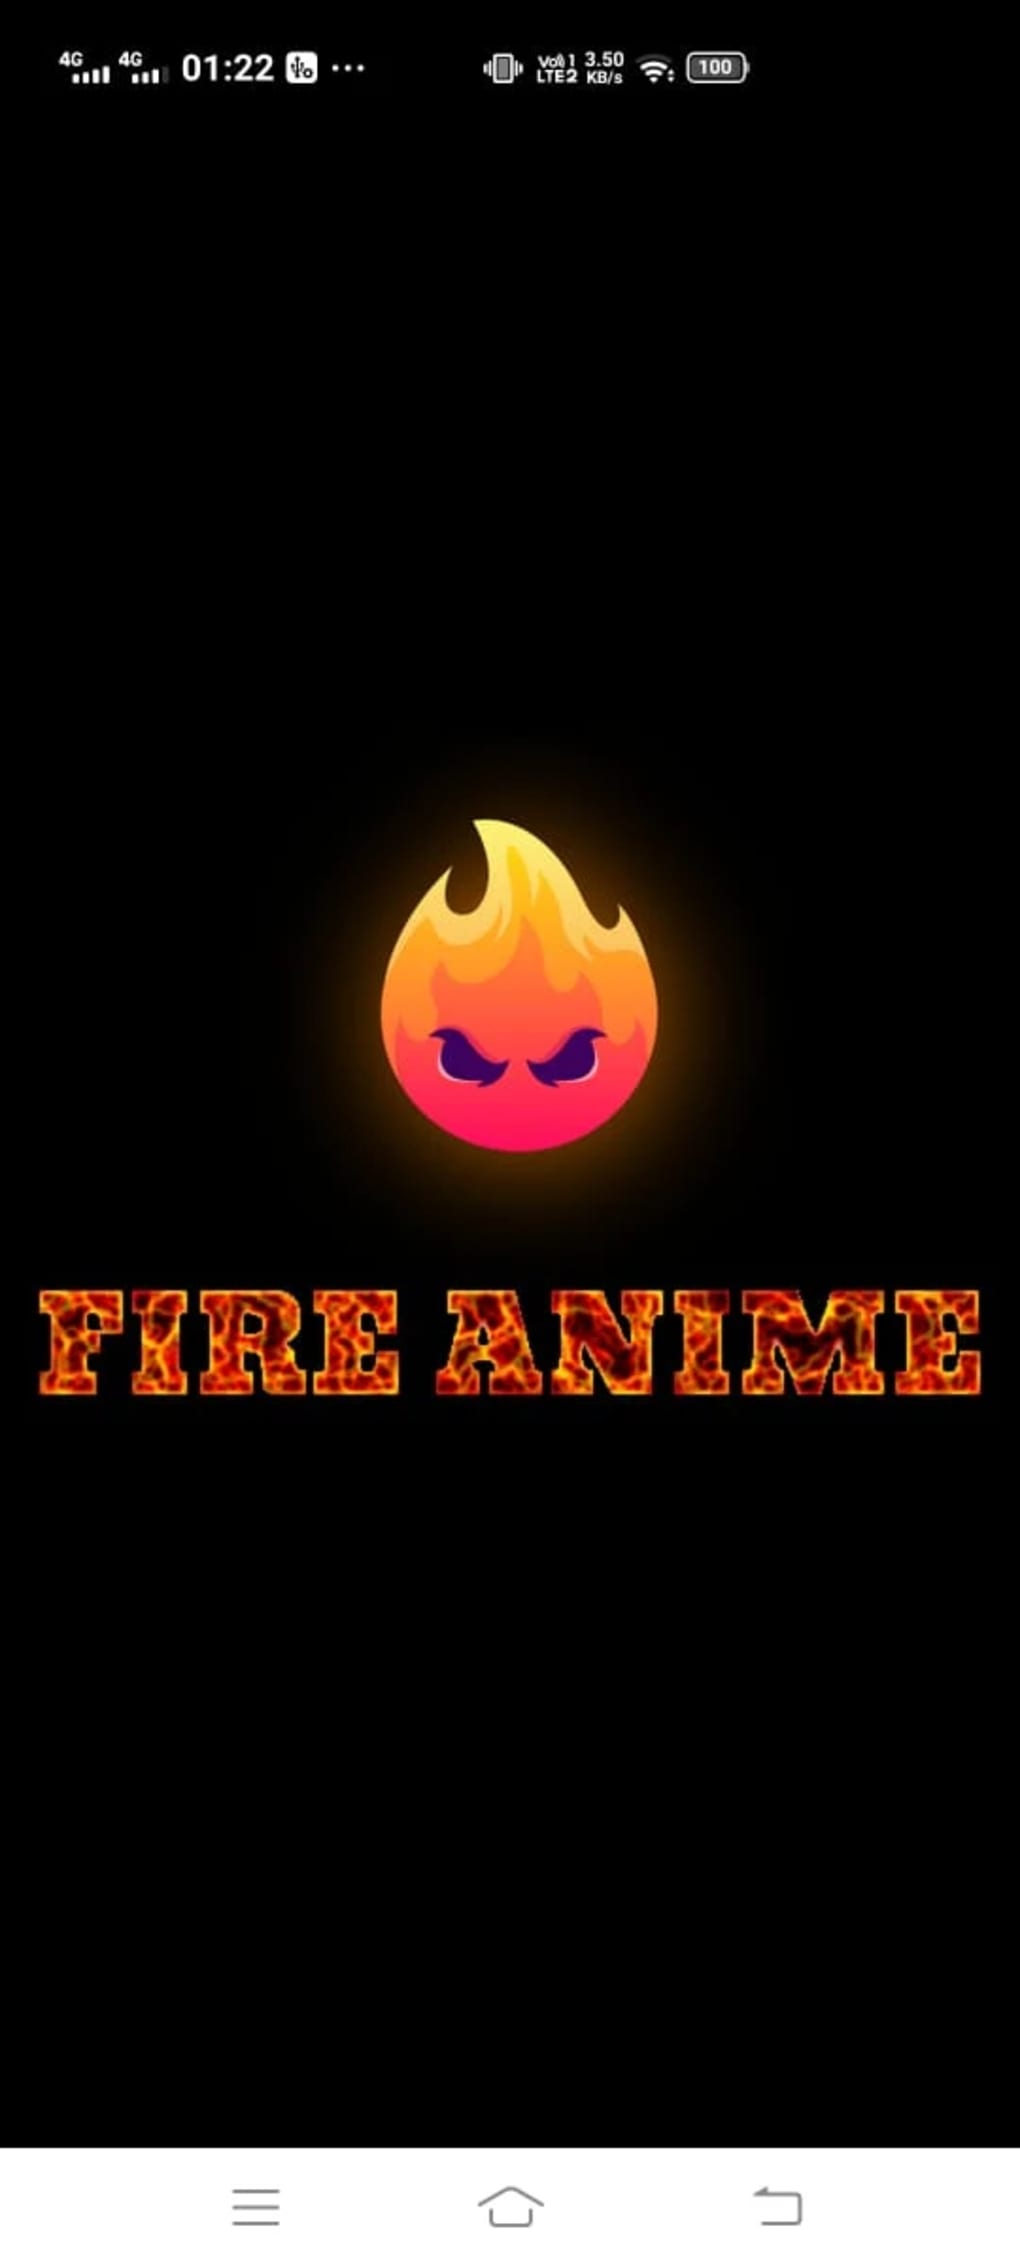 3D BLENDER green fire anime girl demon wallpaper